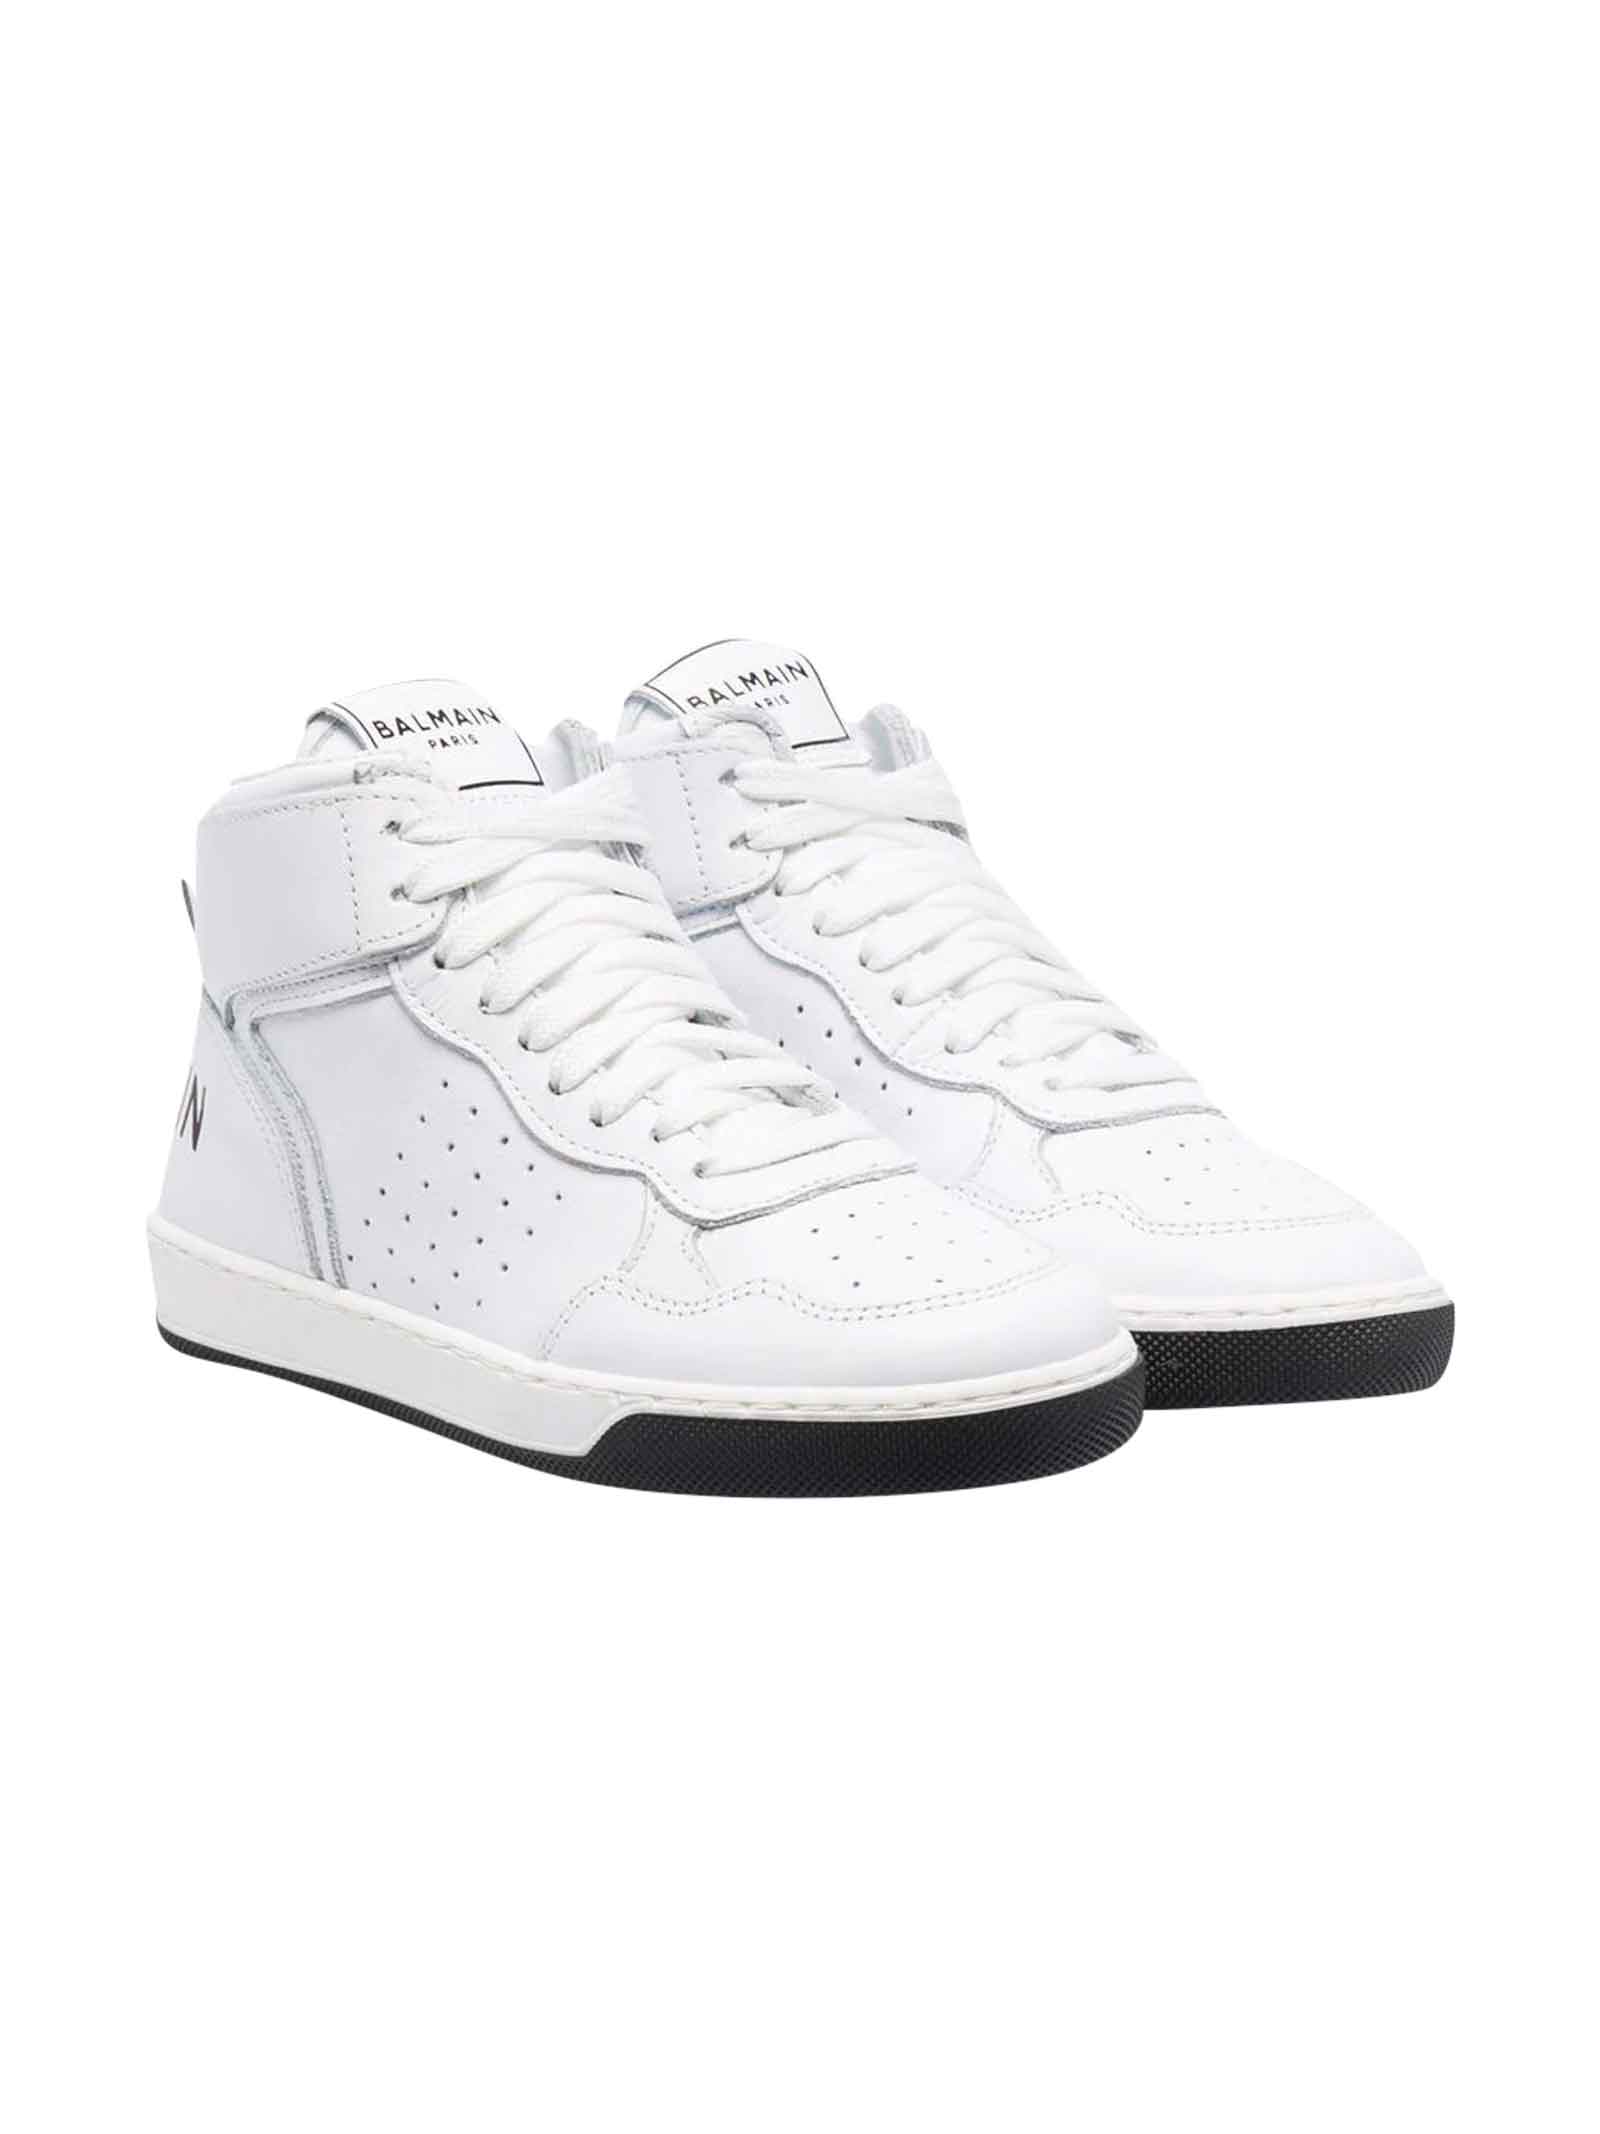 Balmain Unisex White Sneakers